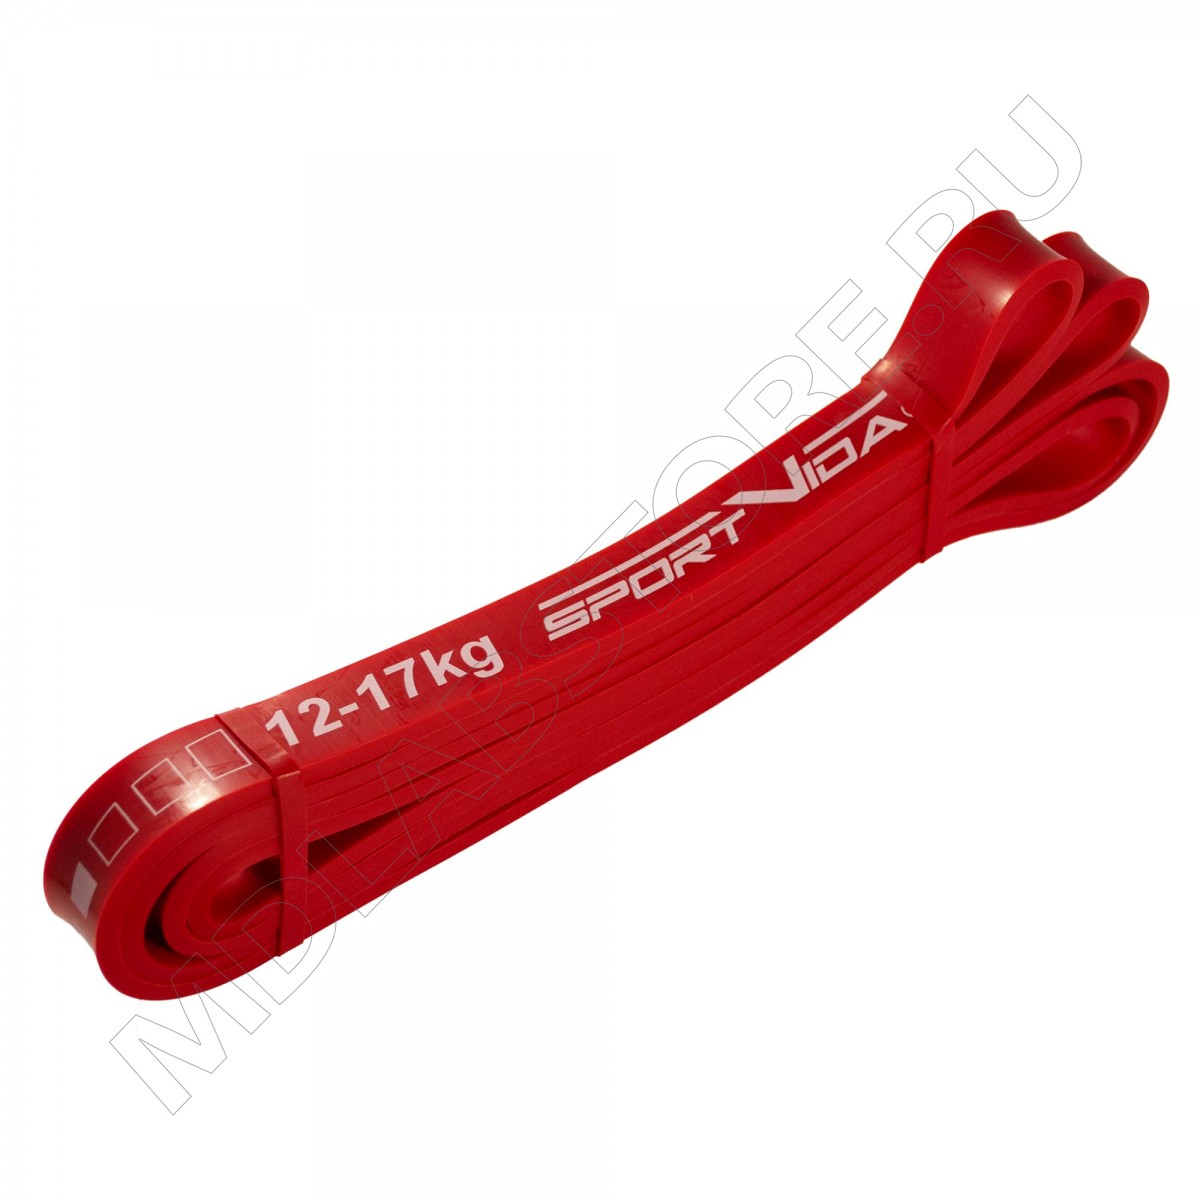 Резиновые петли Power Band. Эспандер лента для подтягивания. Красная резина для подтягивания. Эспандер "петля". Резина для подтягивания купить